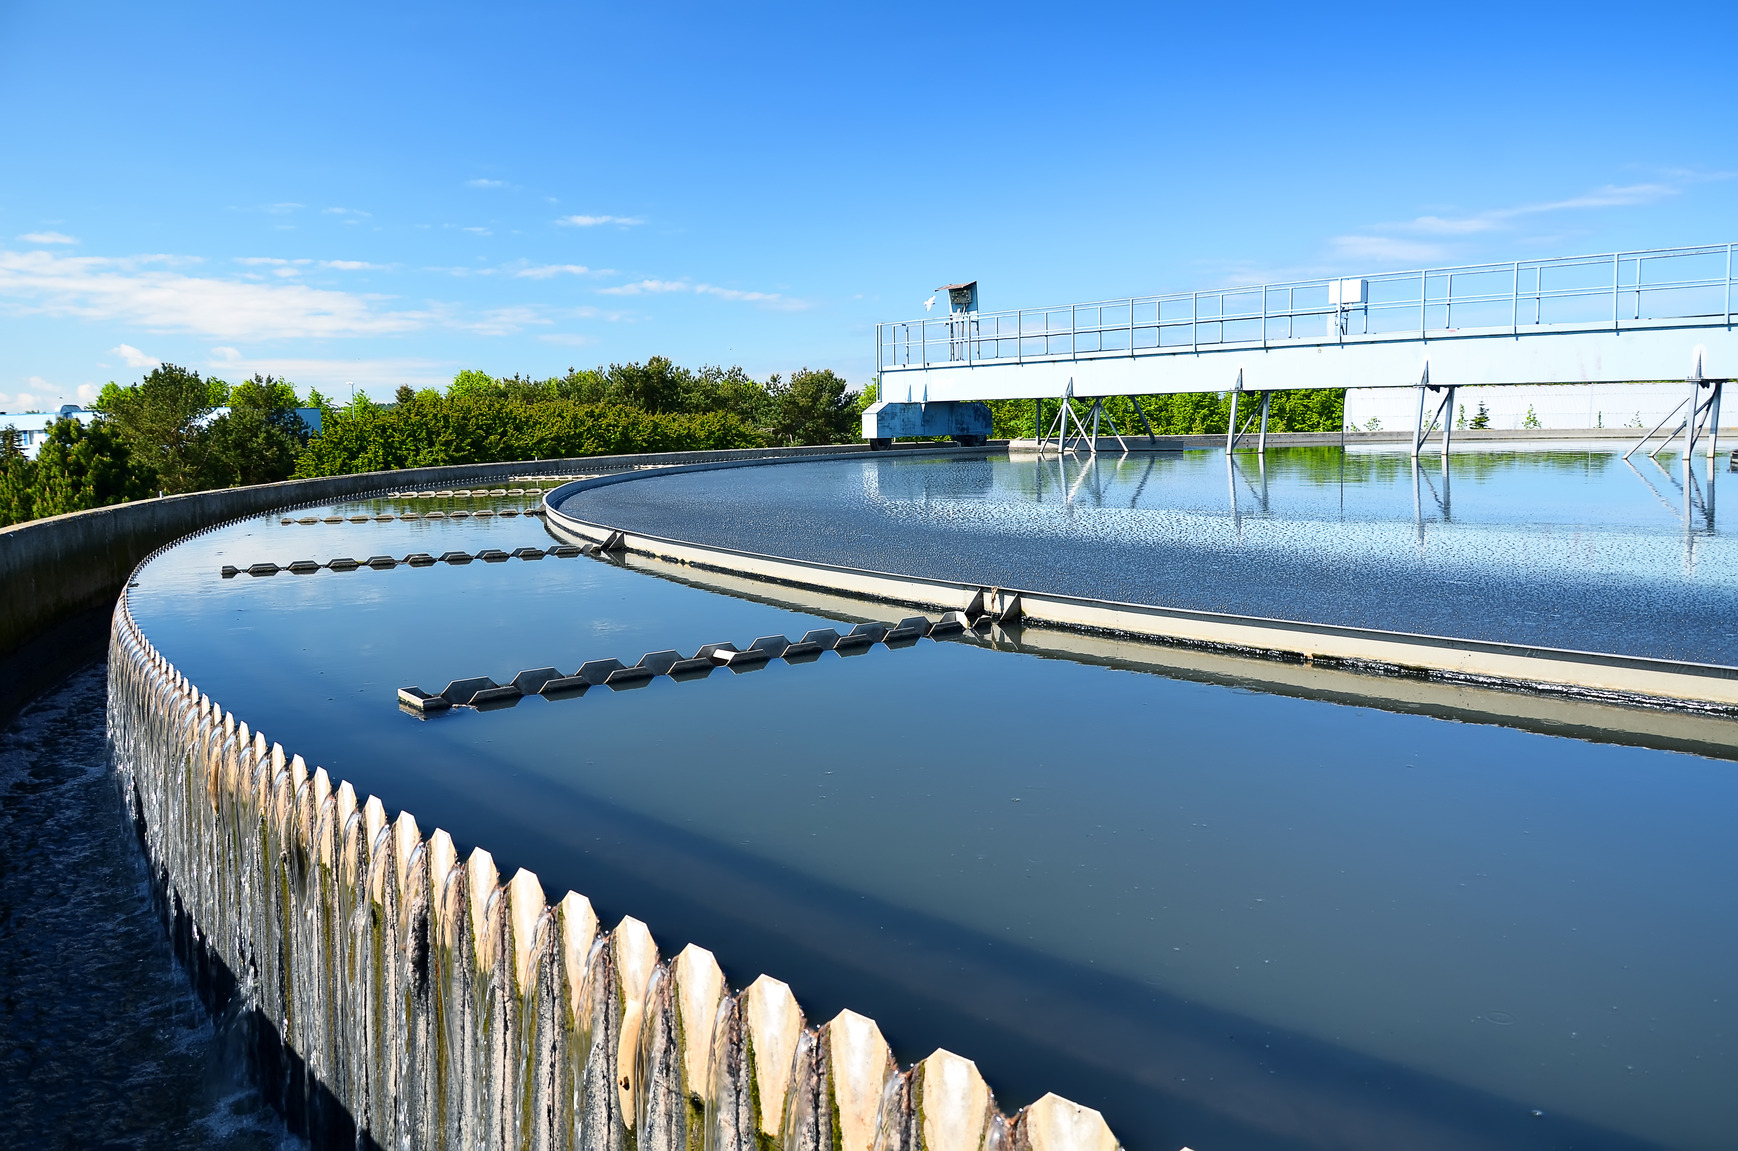 Normativas existentes para el control de emisiones de aguas residuales  industriales (Riles) | Better.cl